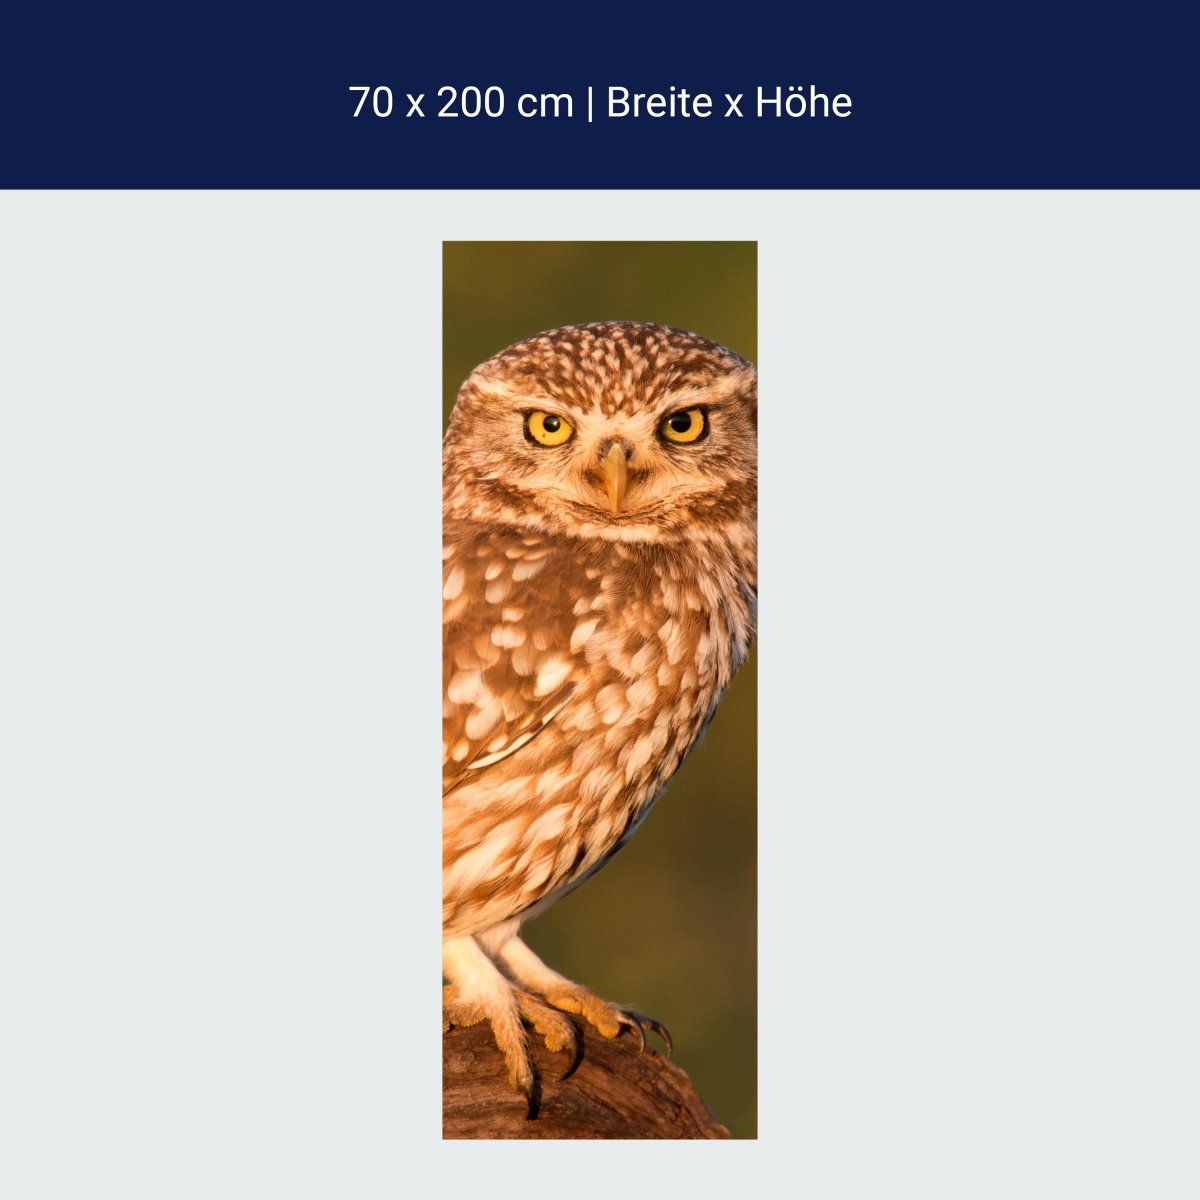 Little owl shower screen, tree trunk M1026